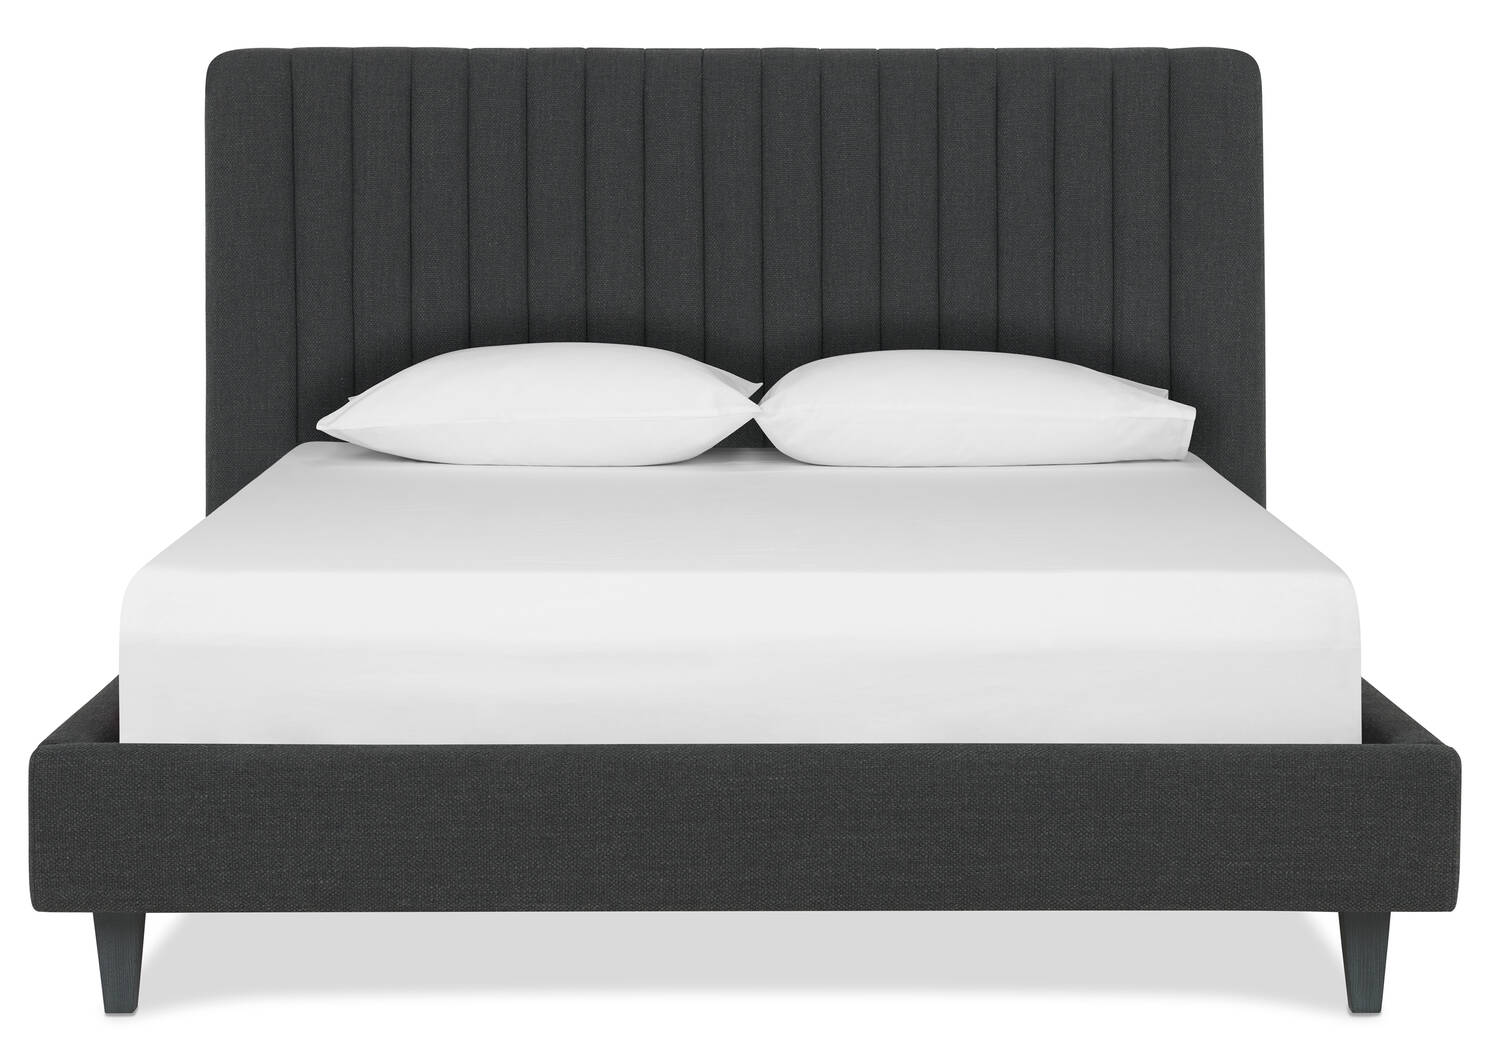 Abbott Upholstered Bed -Easton Charcoal